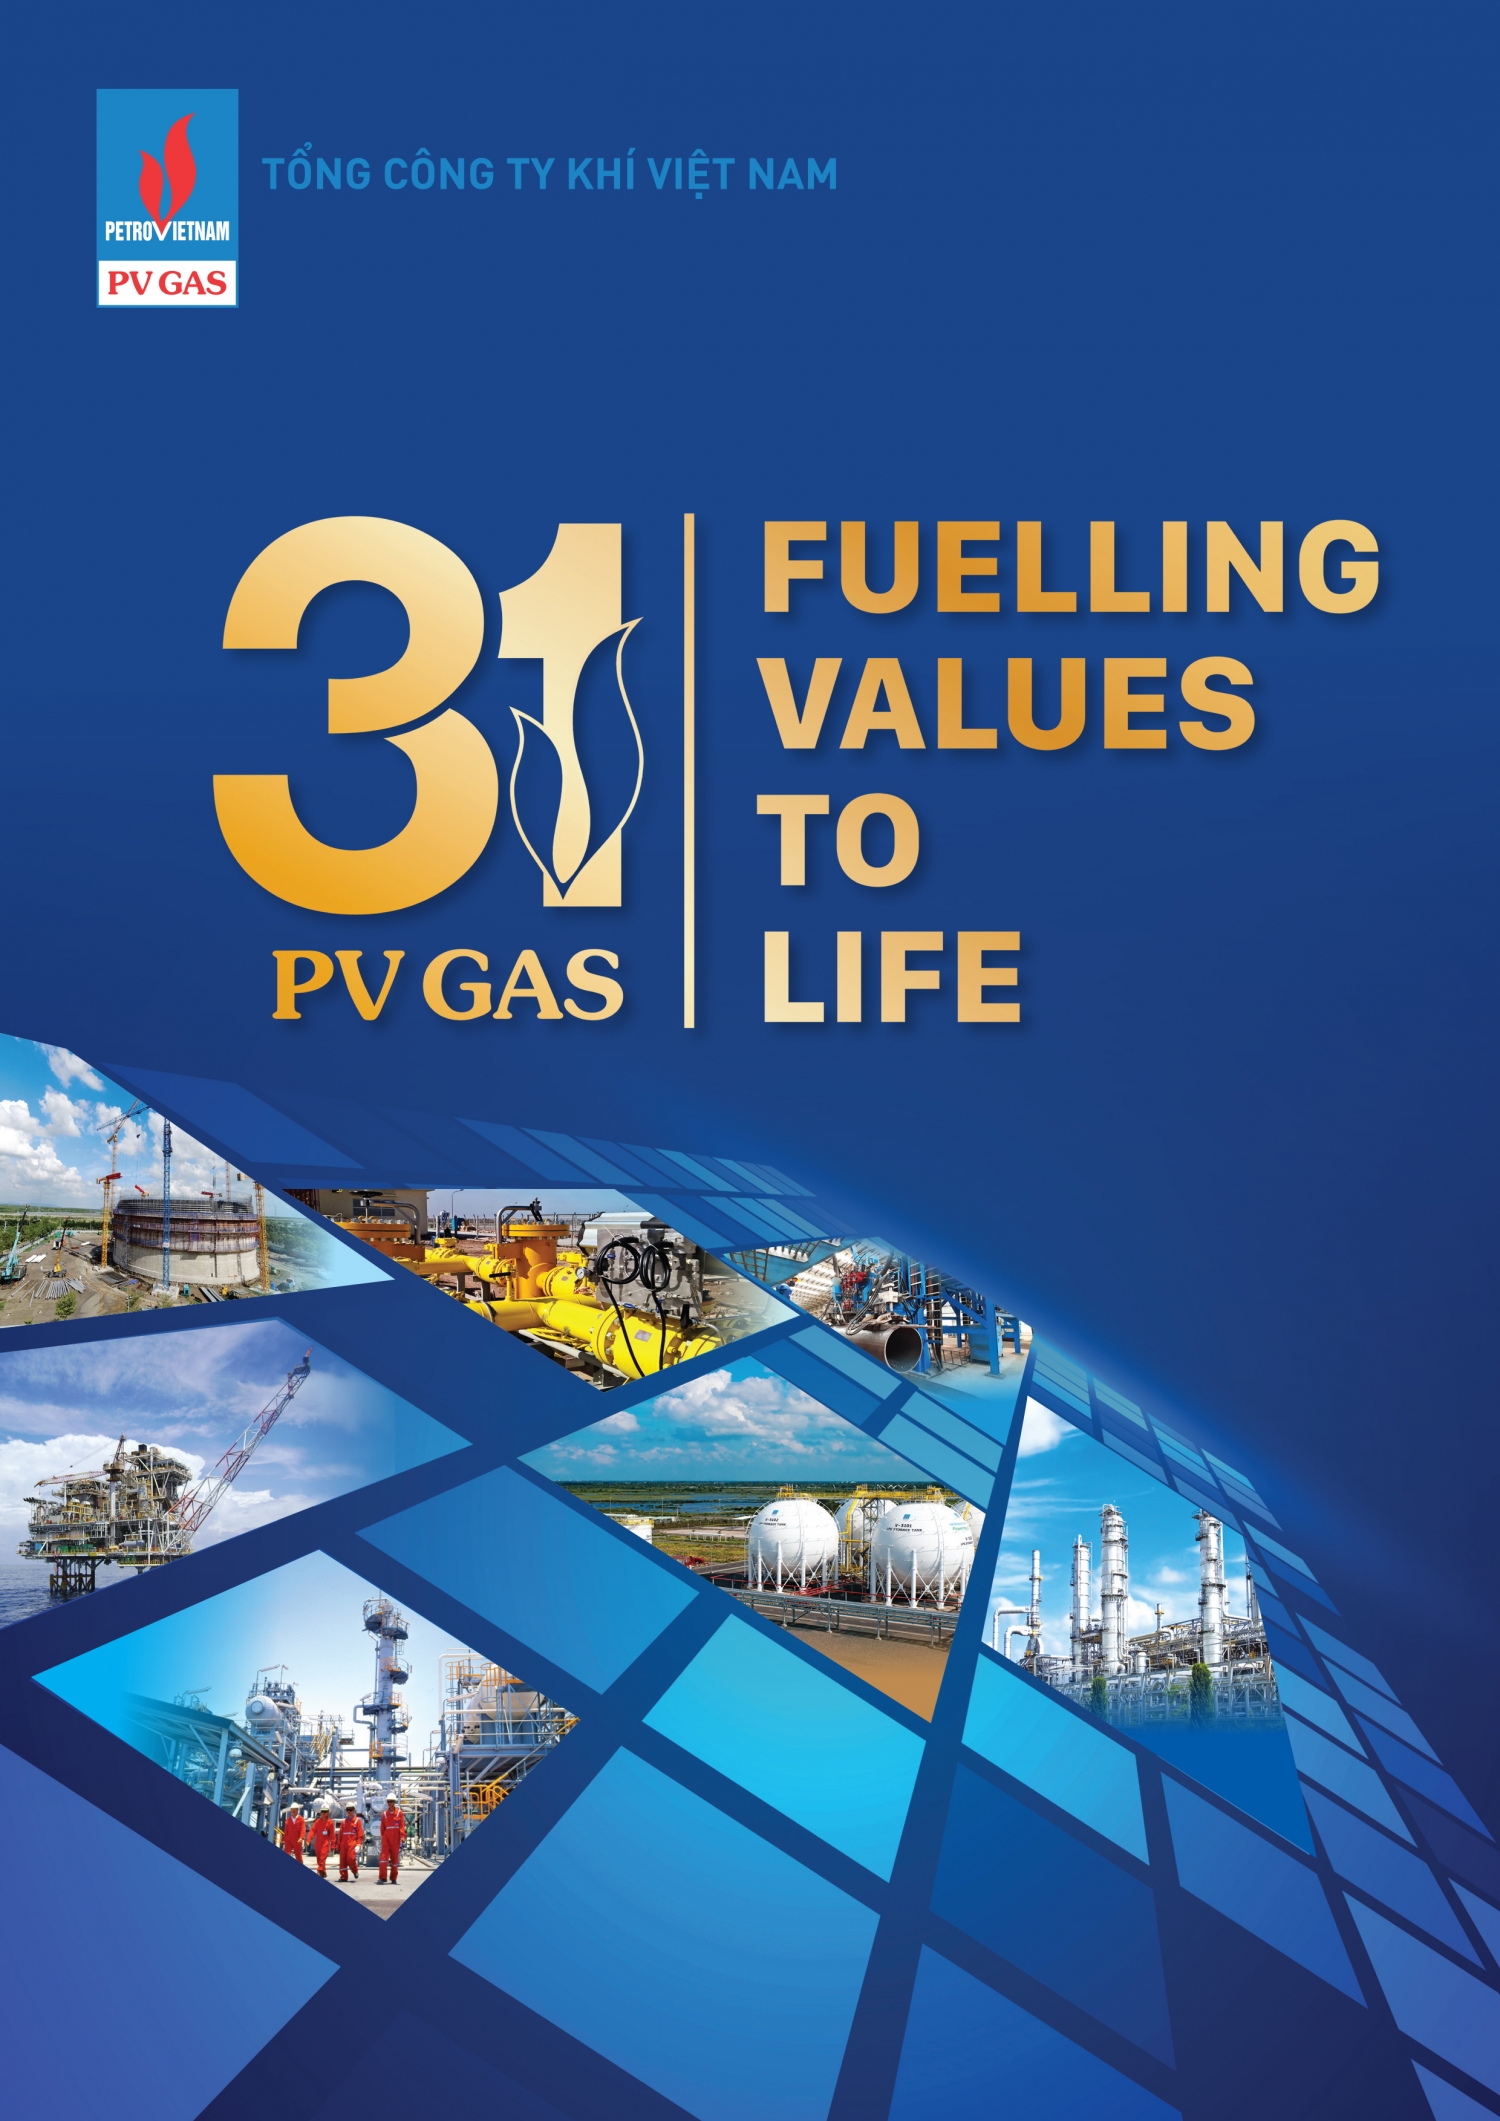 PV GAS: Tự hào truyền thống - Khát vọng vươn cao